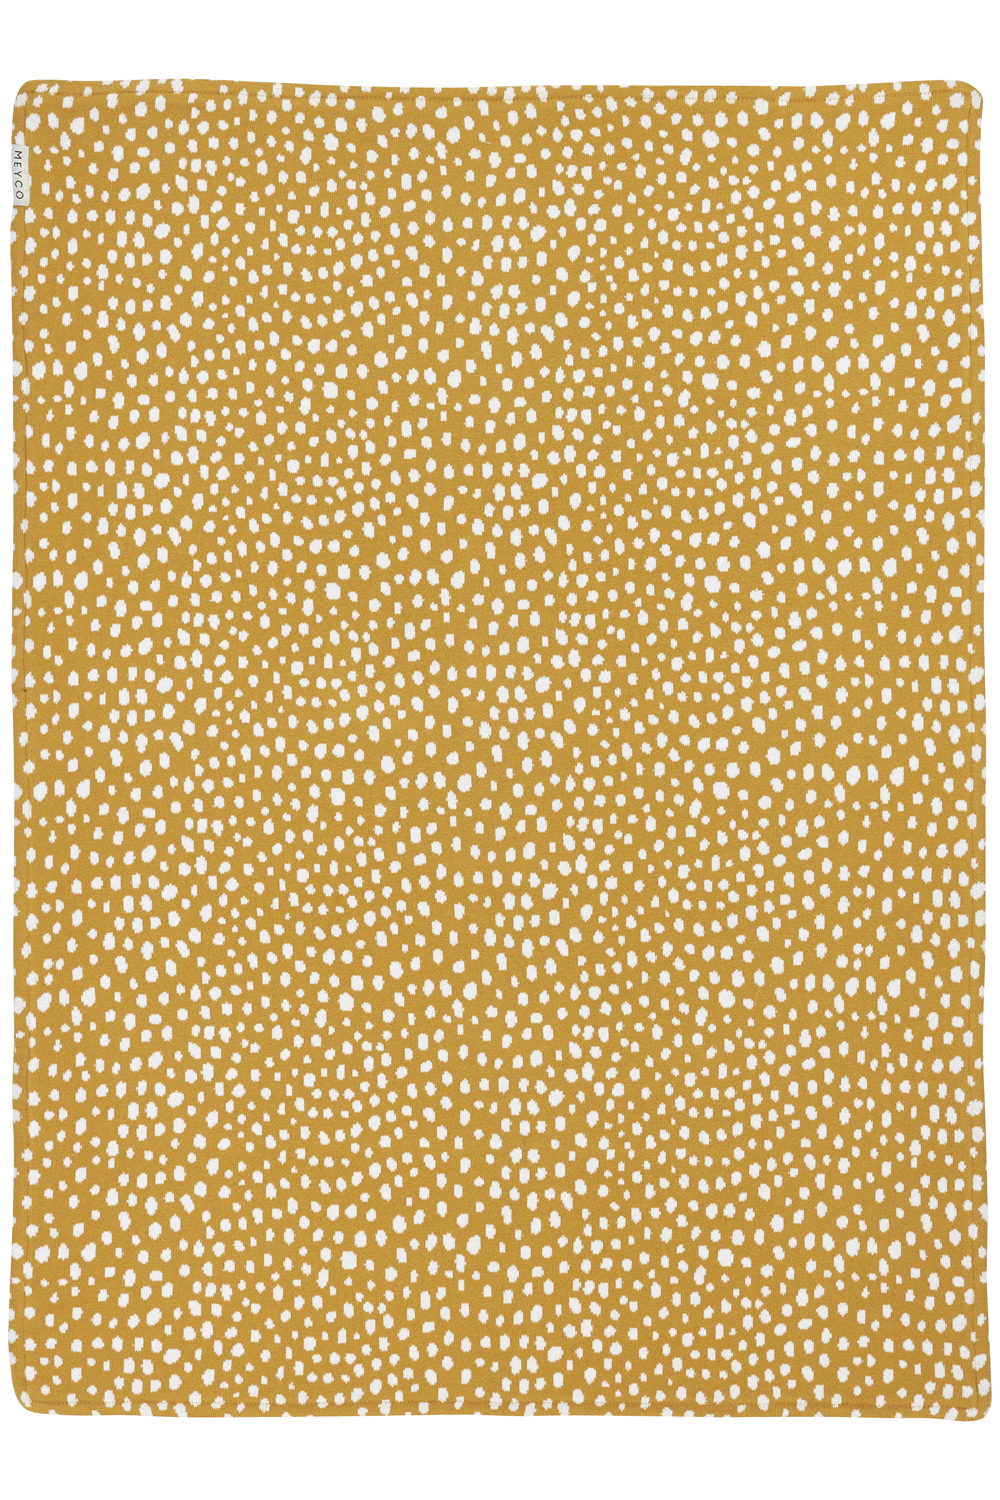 Ledikant deken Cheetah velvet - honey gold - 100x150cm